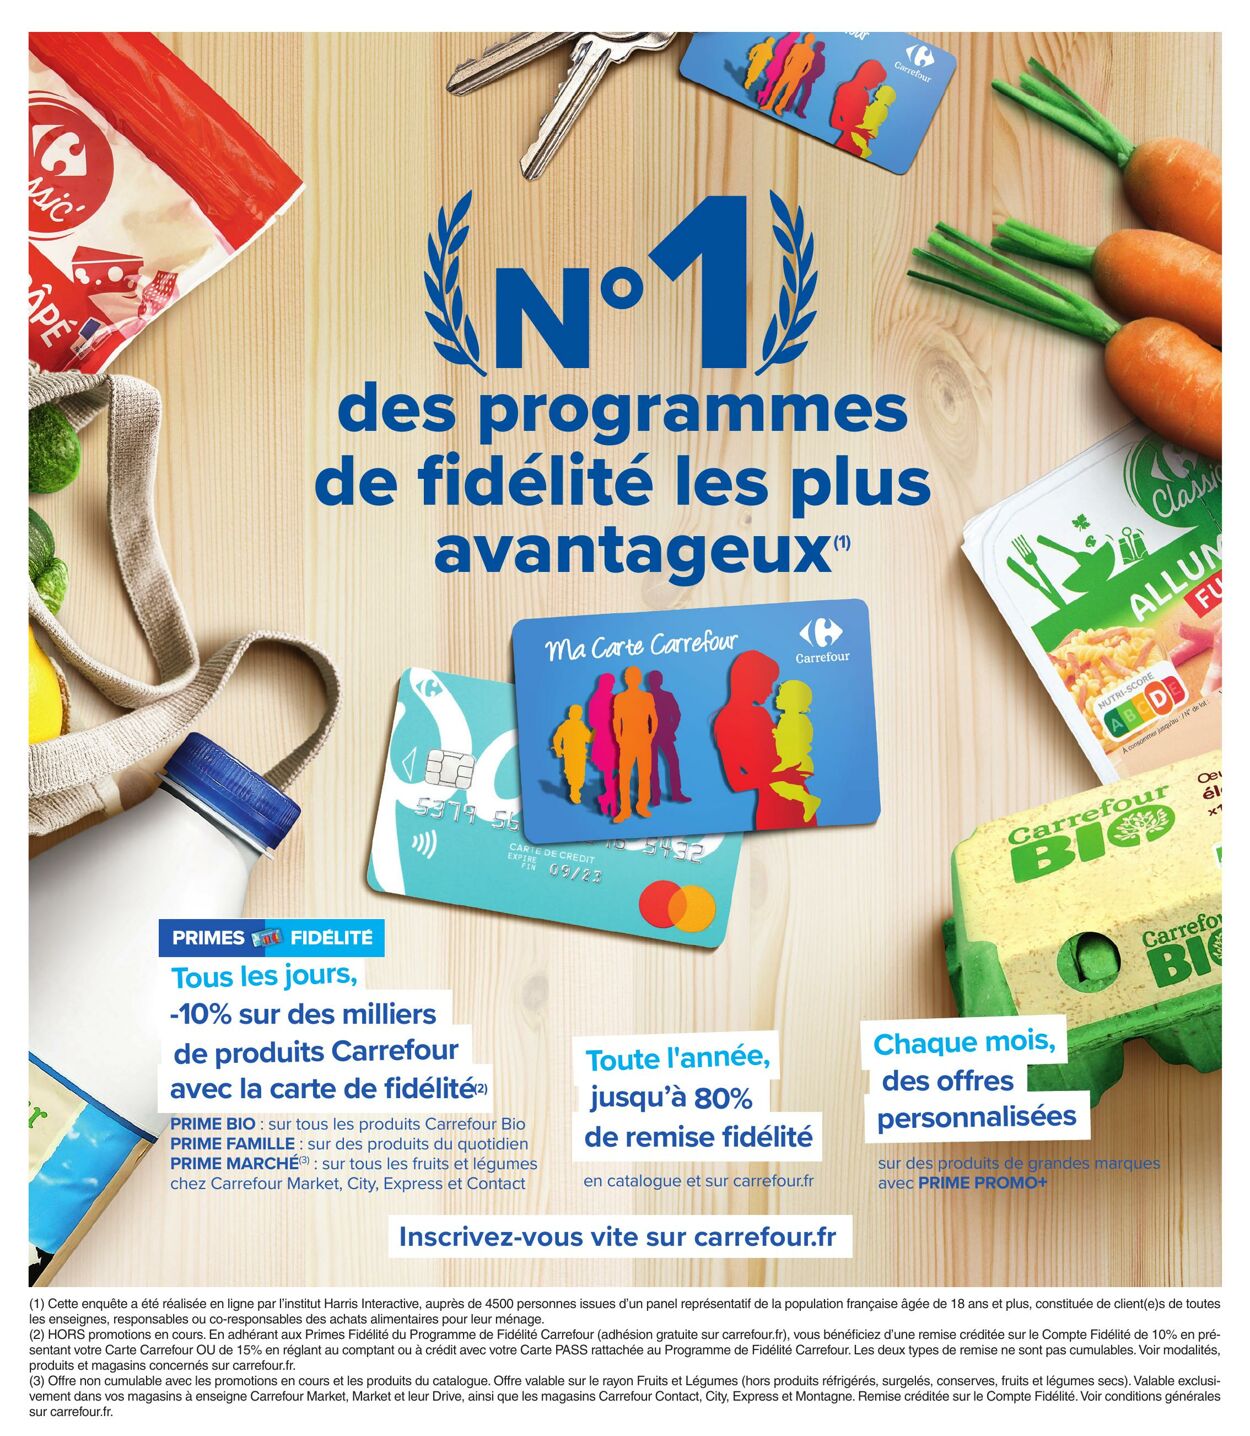 Catalogue Carrefour Market 21.06.2022 - 03.07.2022